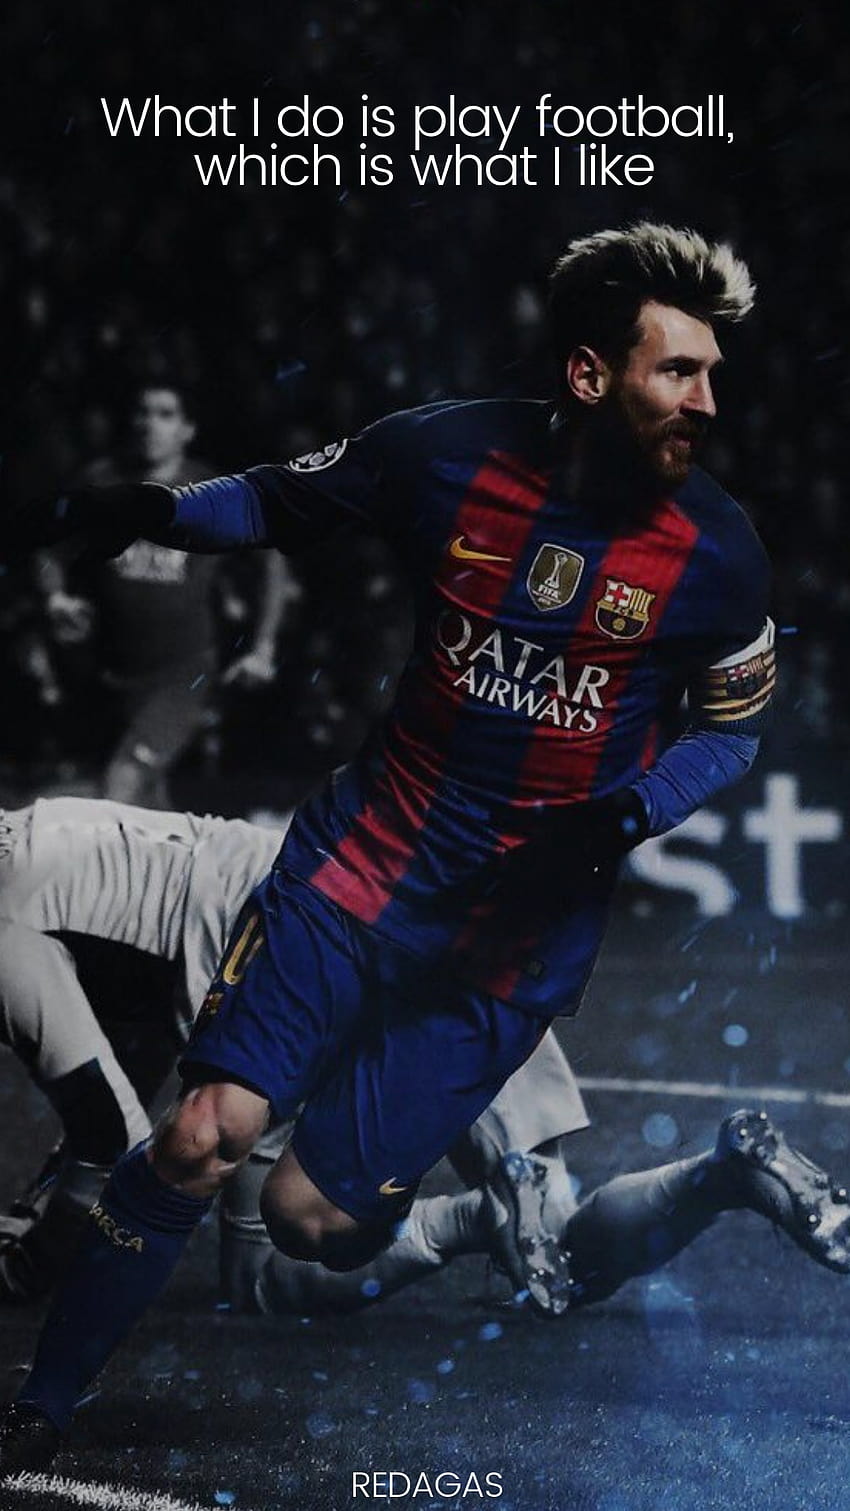 Lionel Messi là một trong những cầu thủ vĩ đại nhất lịch sử bóng đá và những câu nói cảm hứng của anh luôn được trân trọng và truyền cảm hứng cho hàng triệu người hâm mộ bóng đá. Hãy lấy động lực từ các câu nói này và trang trí cho màn hình của bạn bằng hình nền Messi tuyệt đẹp.